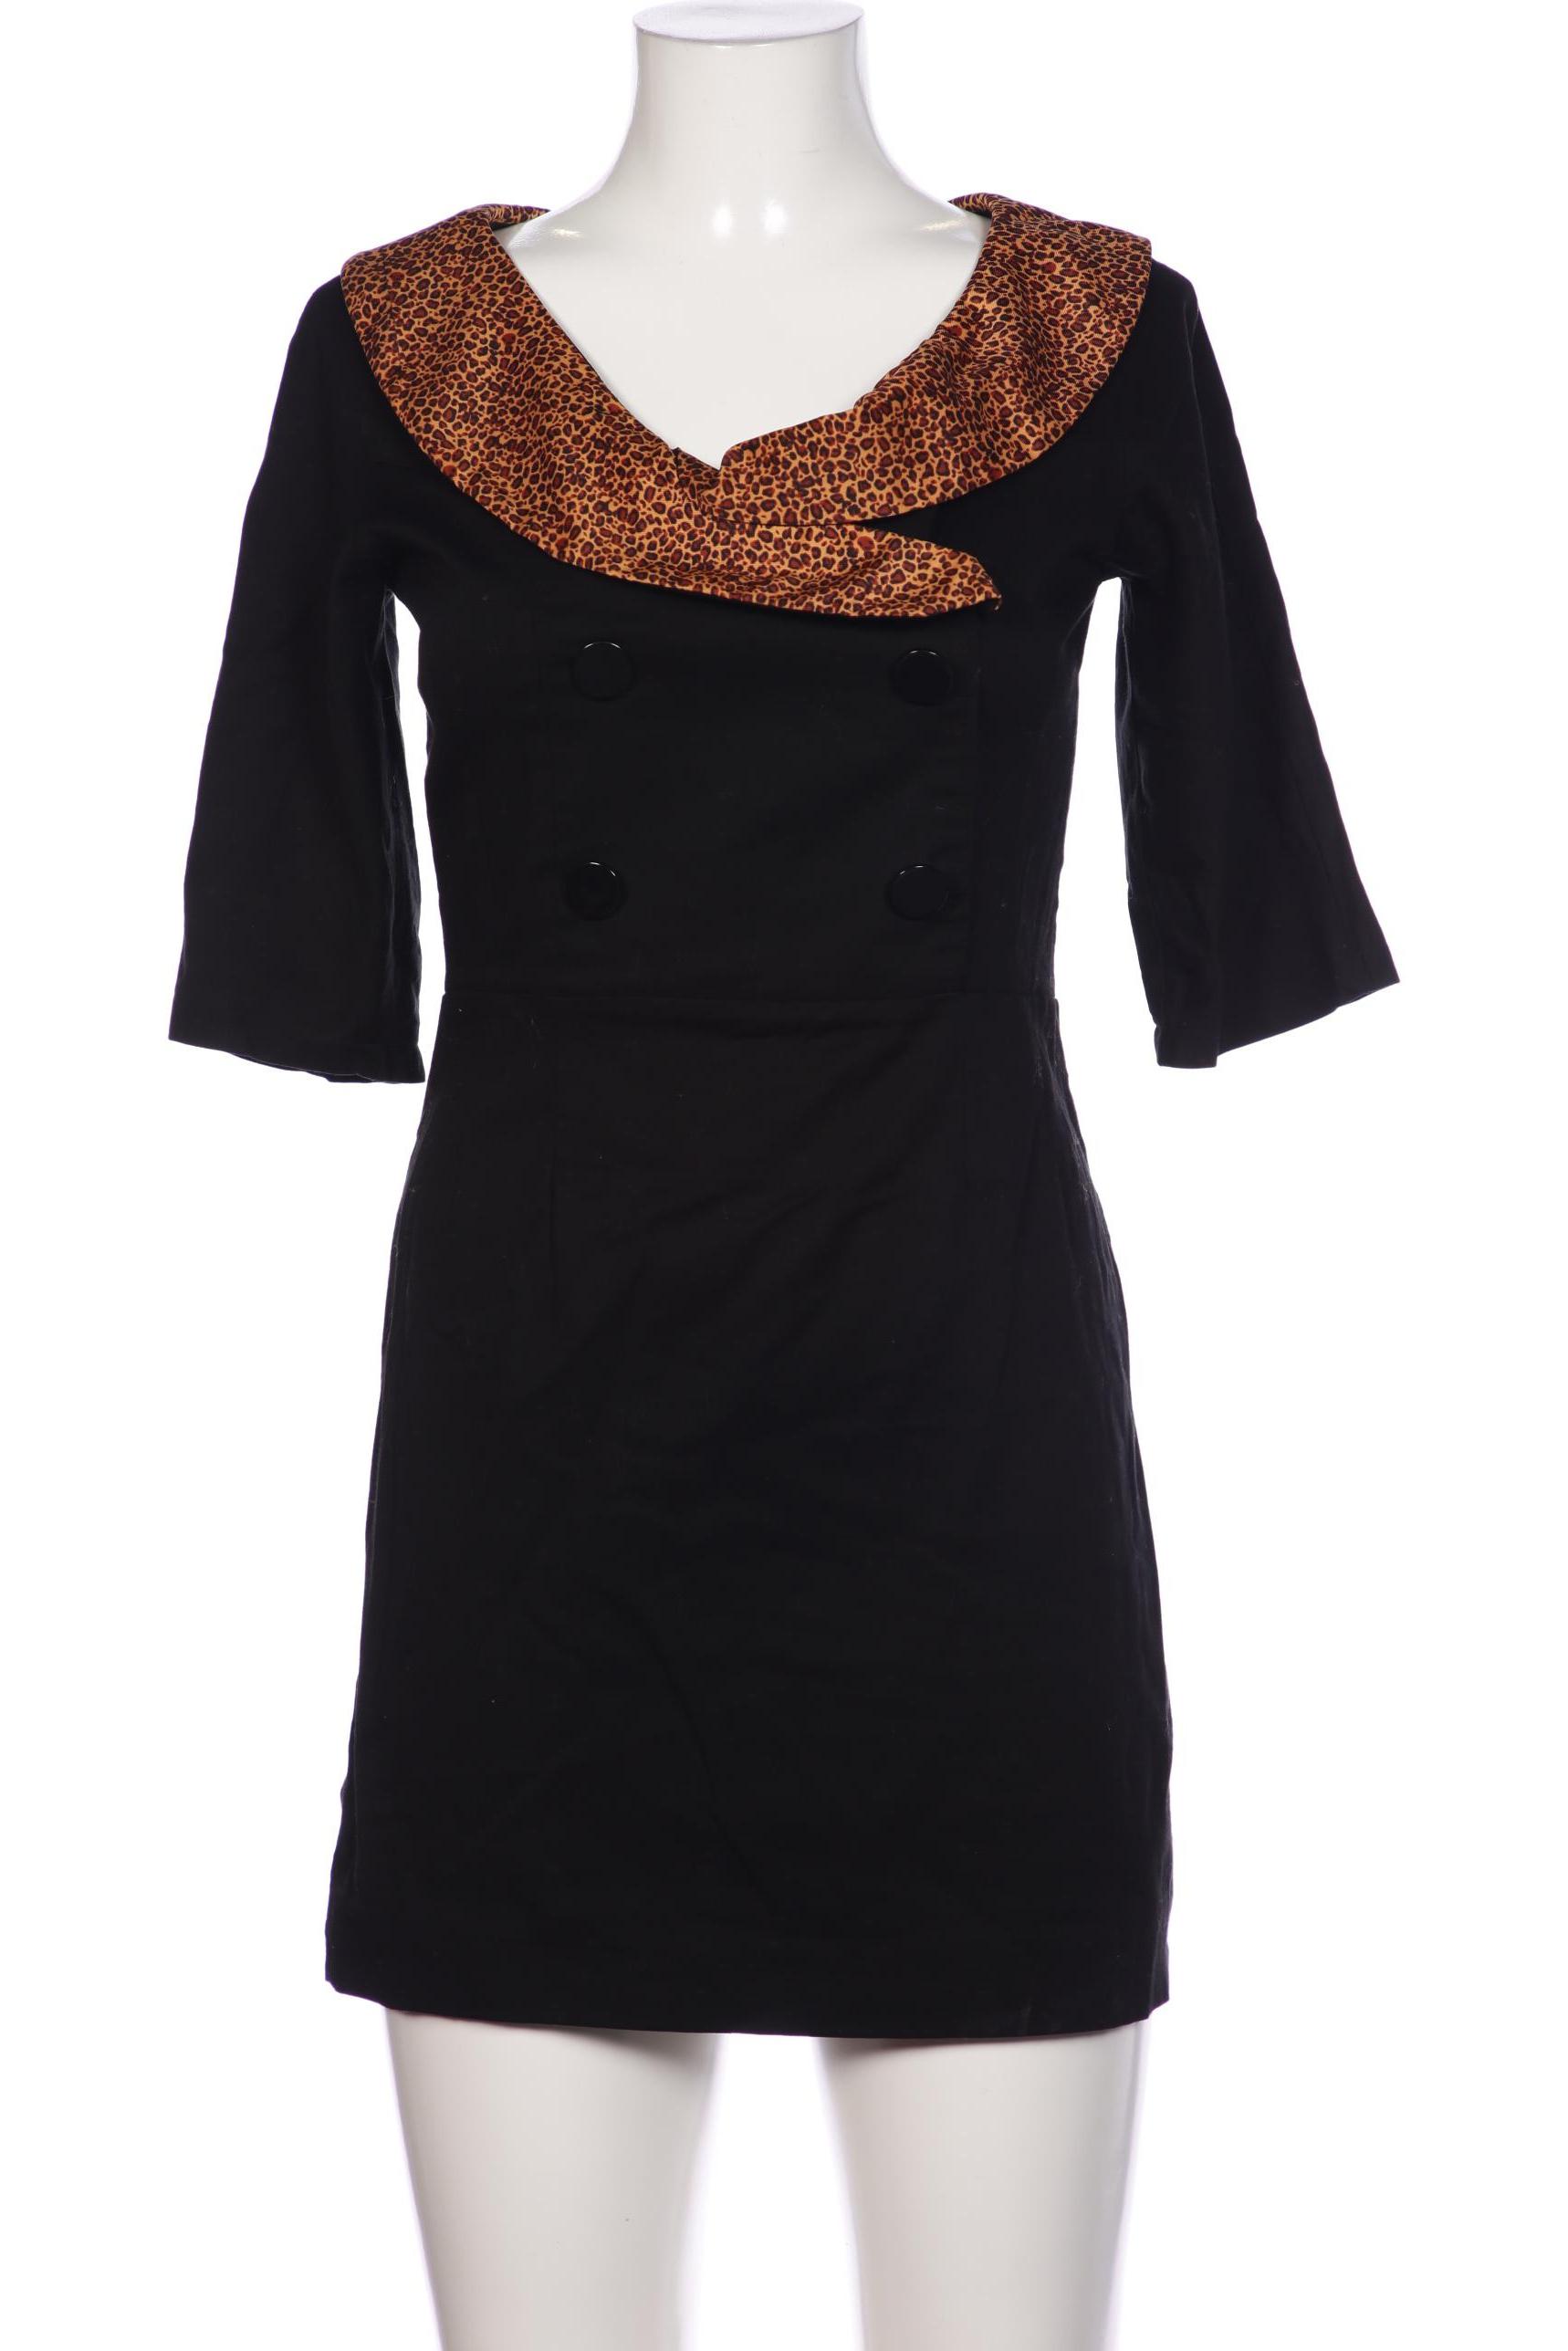 Lindy Bop Damen Kleid, schwarz, Gr. 40 von lindy bop